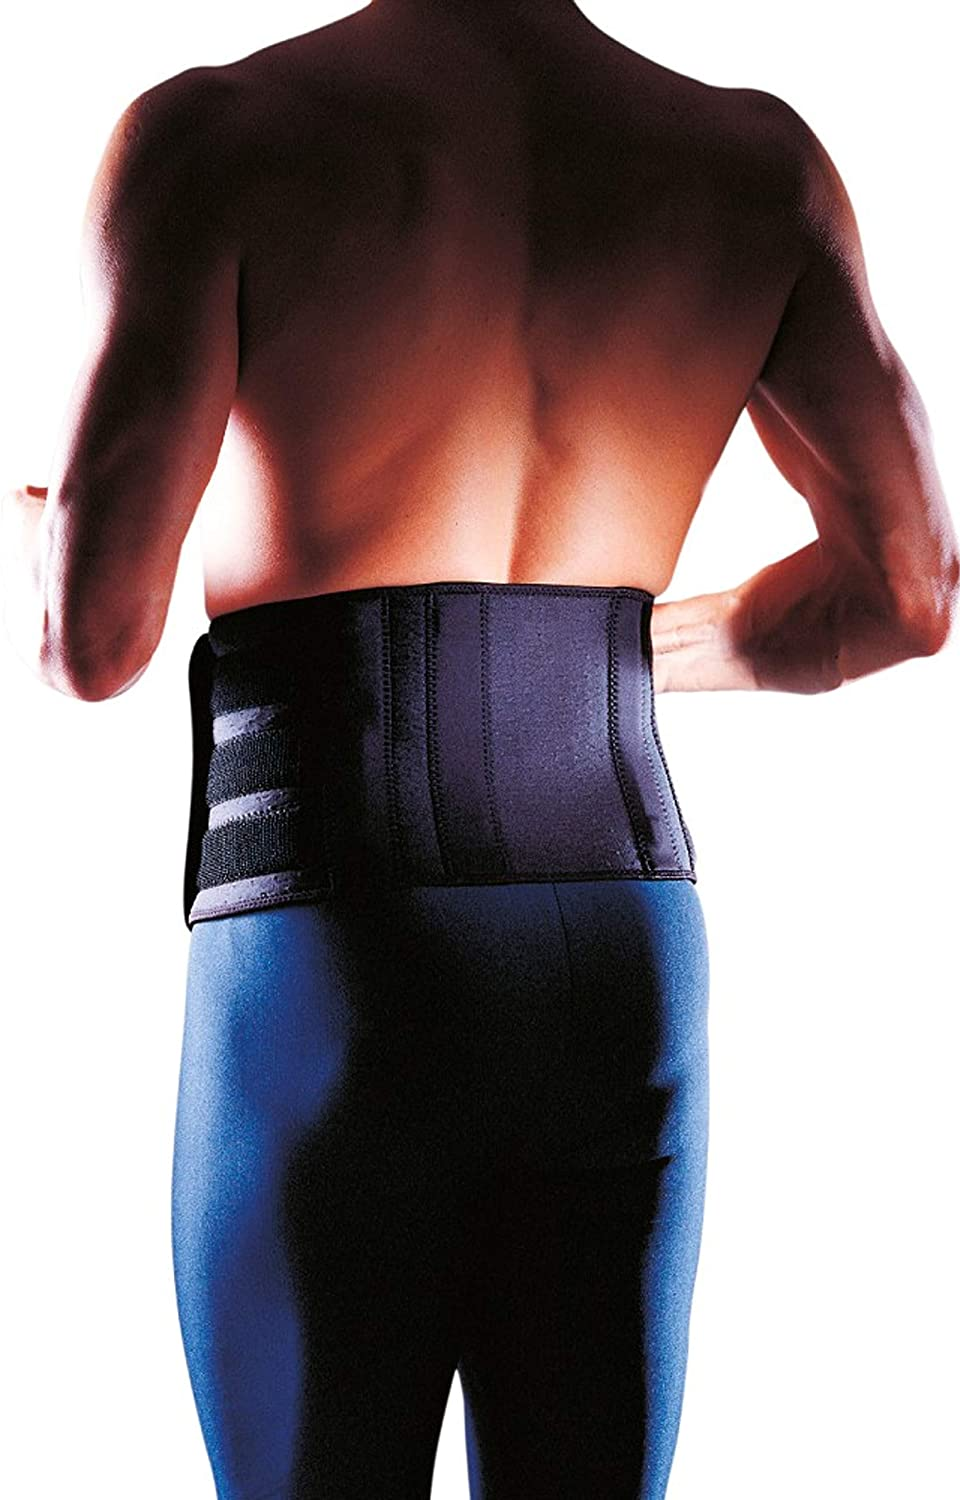 Rücken-Bandage - Rückenschutz - Rückenstütze aus der Extreme Serie, Größe:Universalgröße, Farbe:schwarz